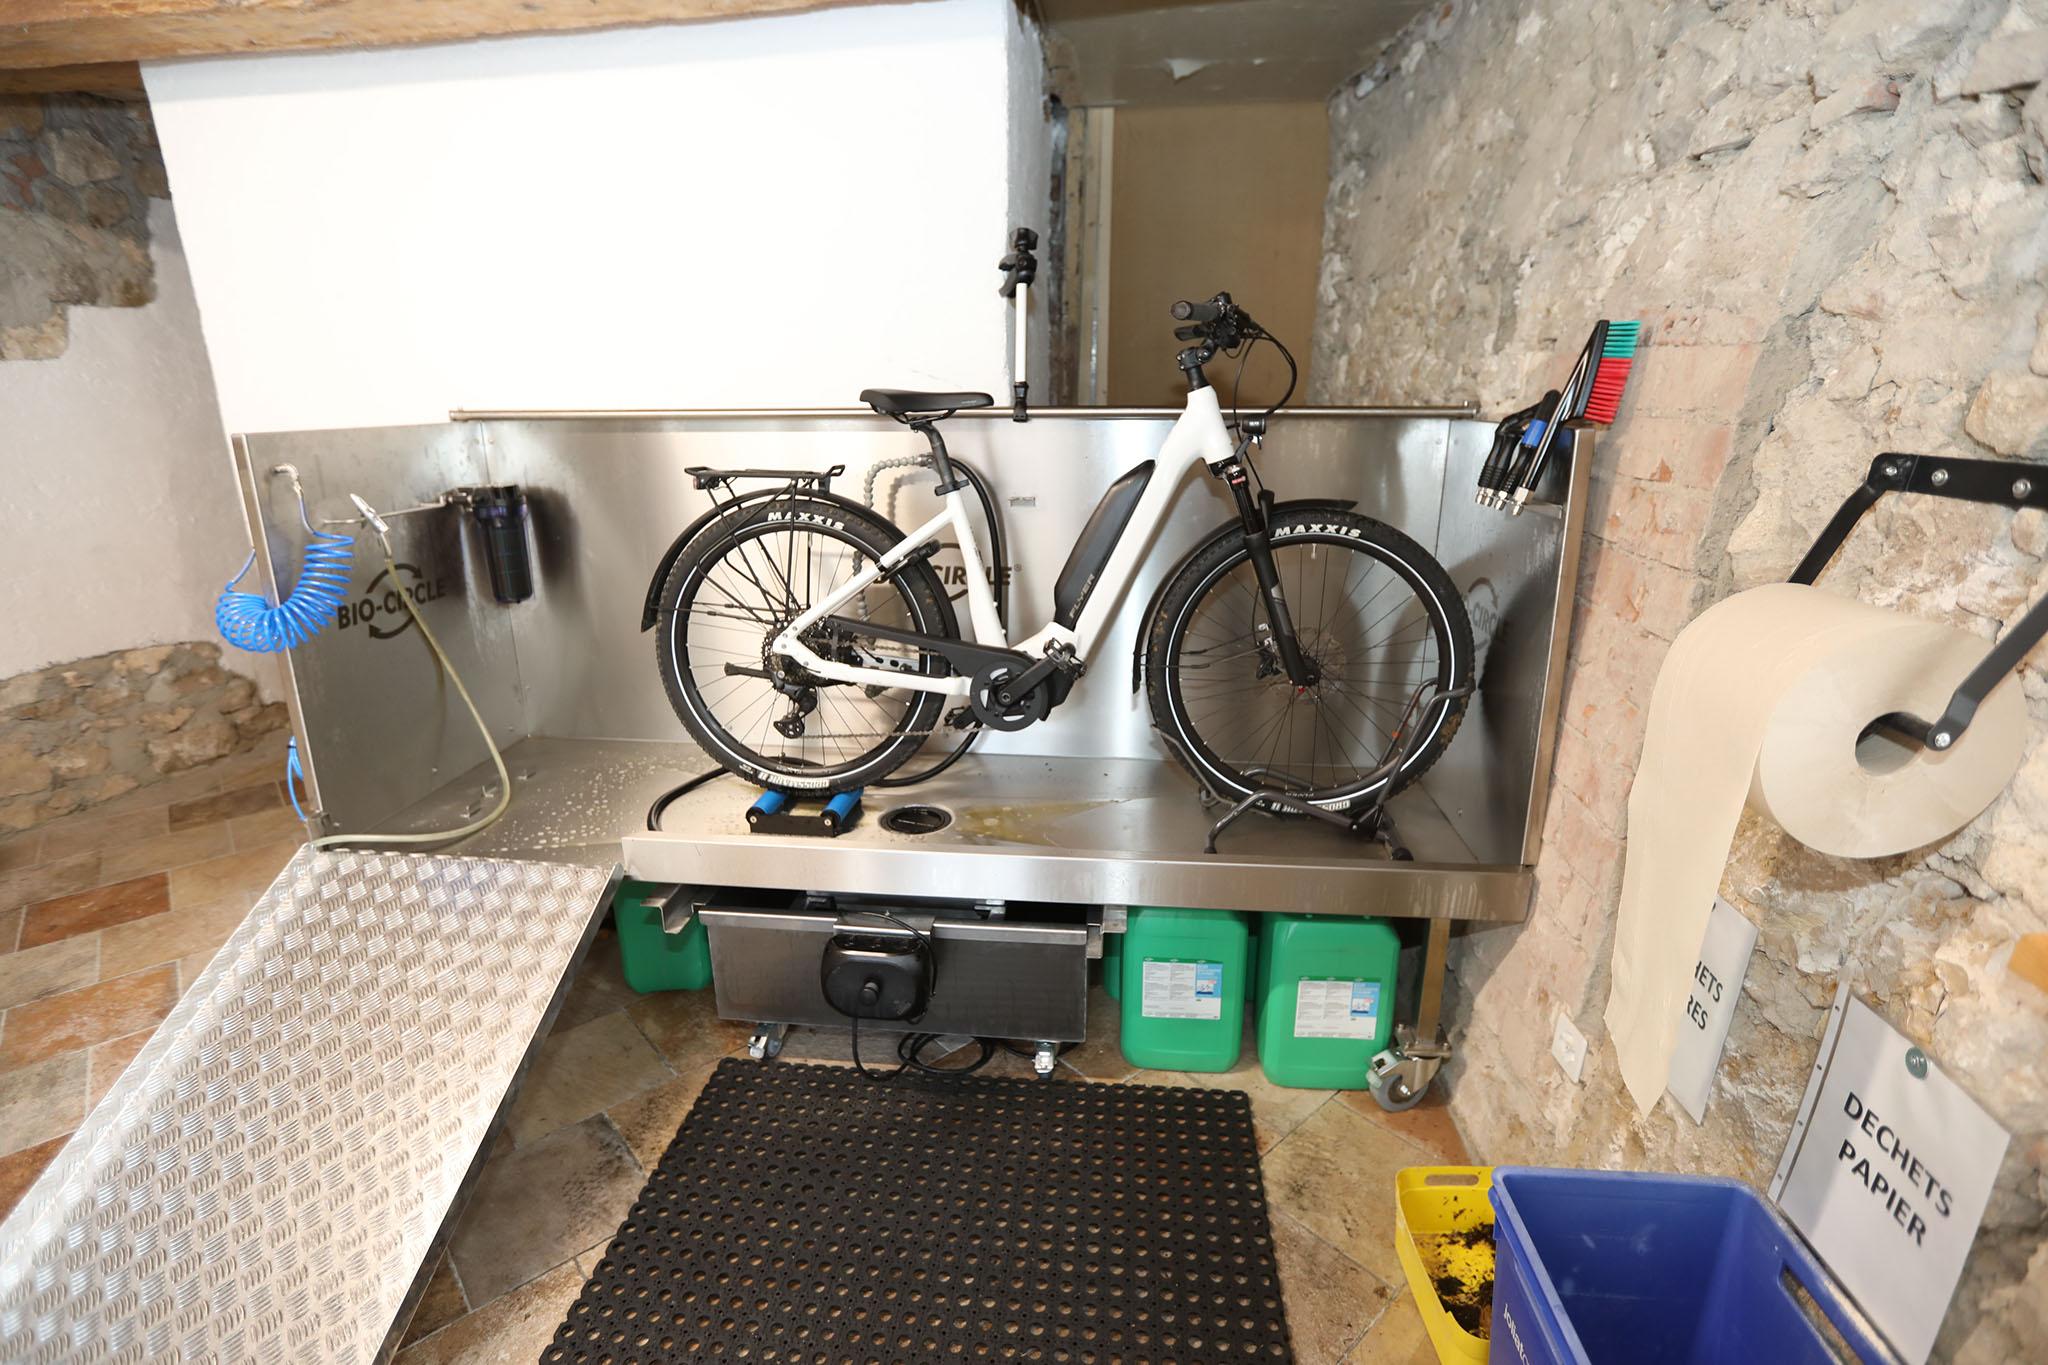 Une station de lavage pour nettoyer les vélos au pôle mobilité de St-Ursanne. [RTS - Gaël Klein]